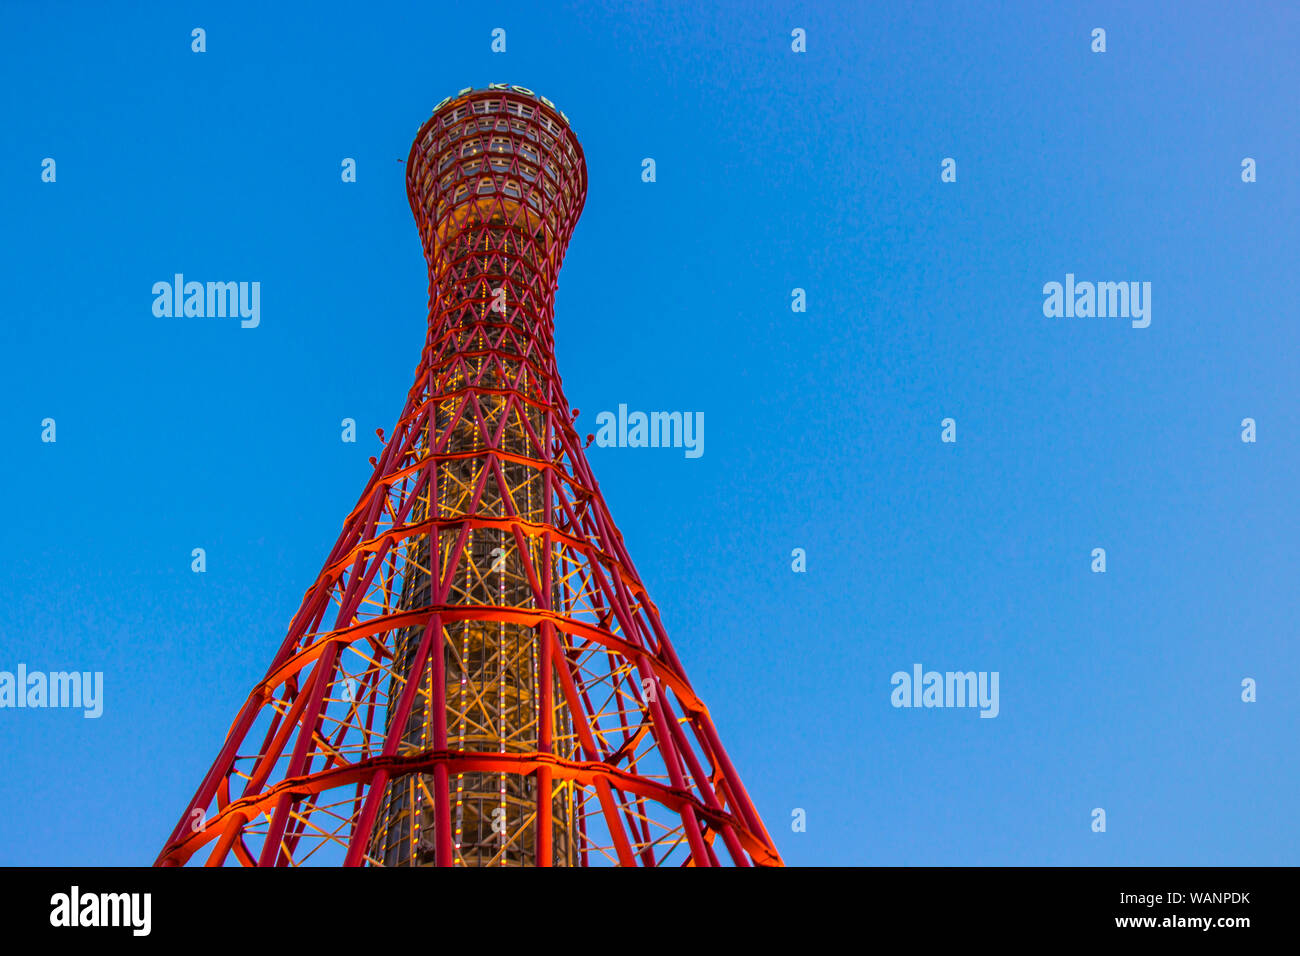 KOBE, JAPON - 11 mars 2018 : Kobe port Tower est un 108 m de haut pylône en treillis, Japon Banque D'Images